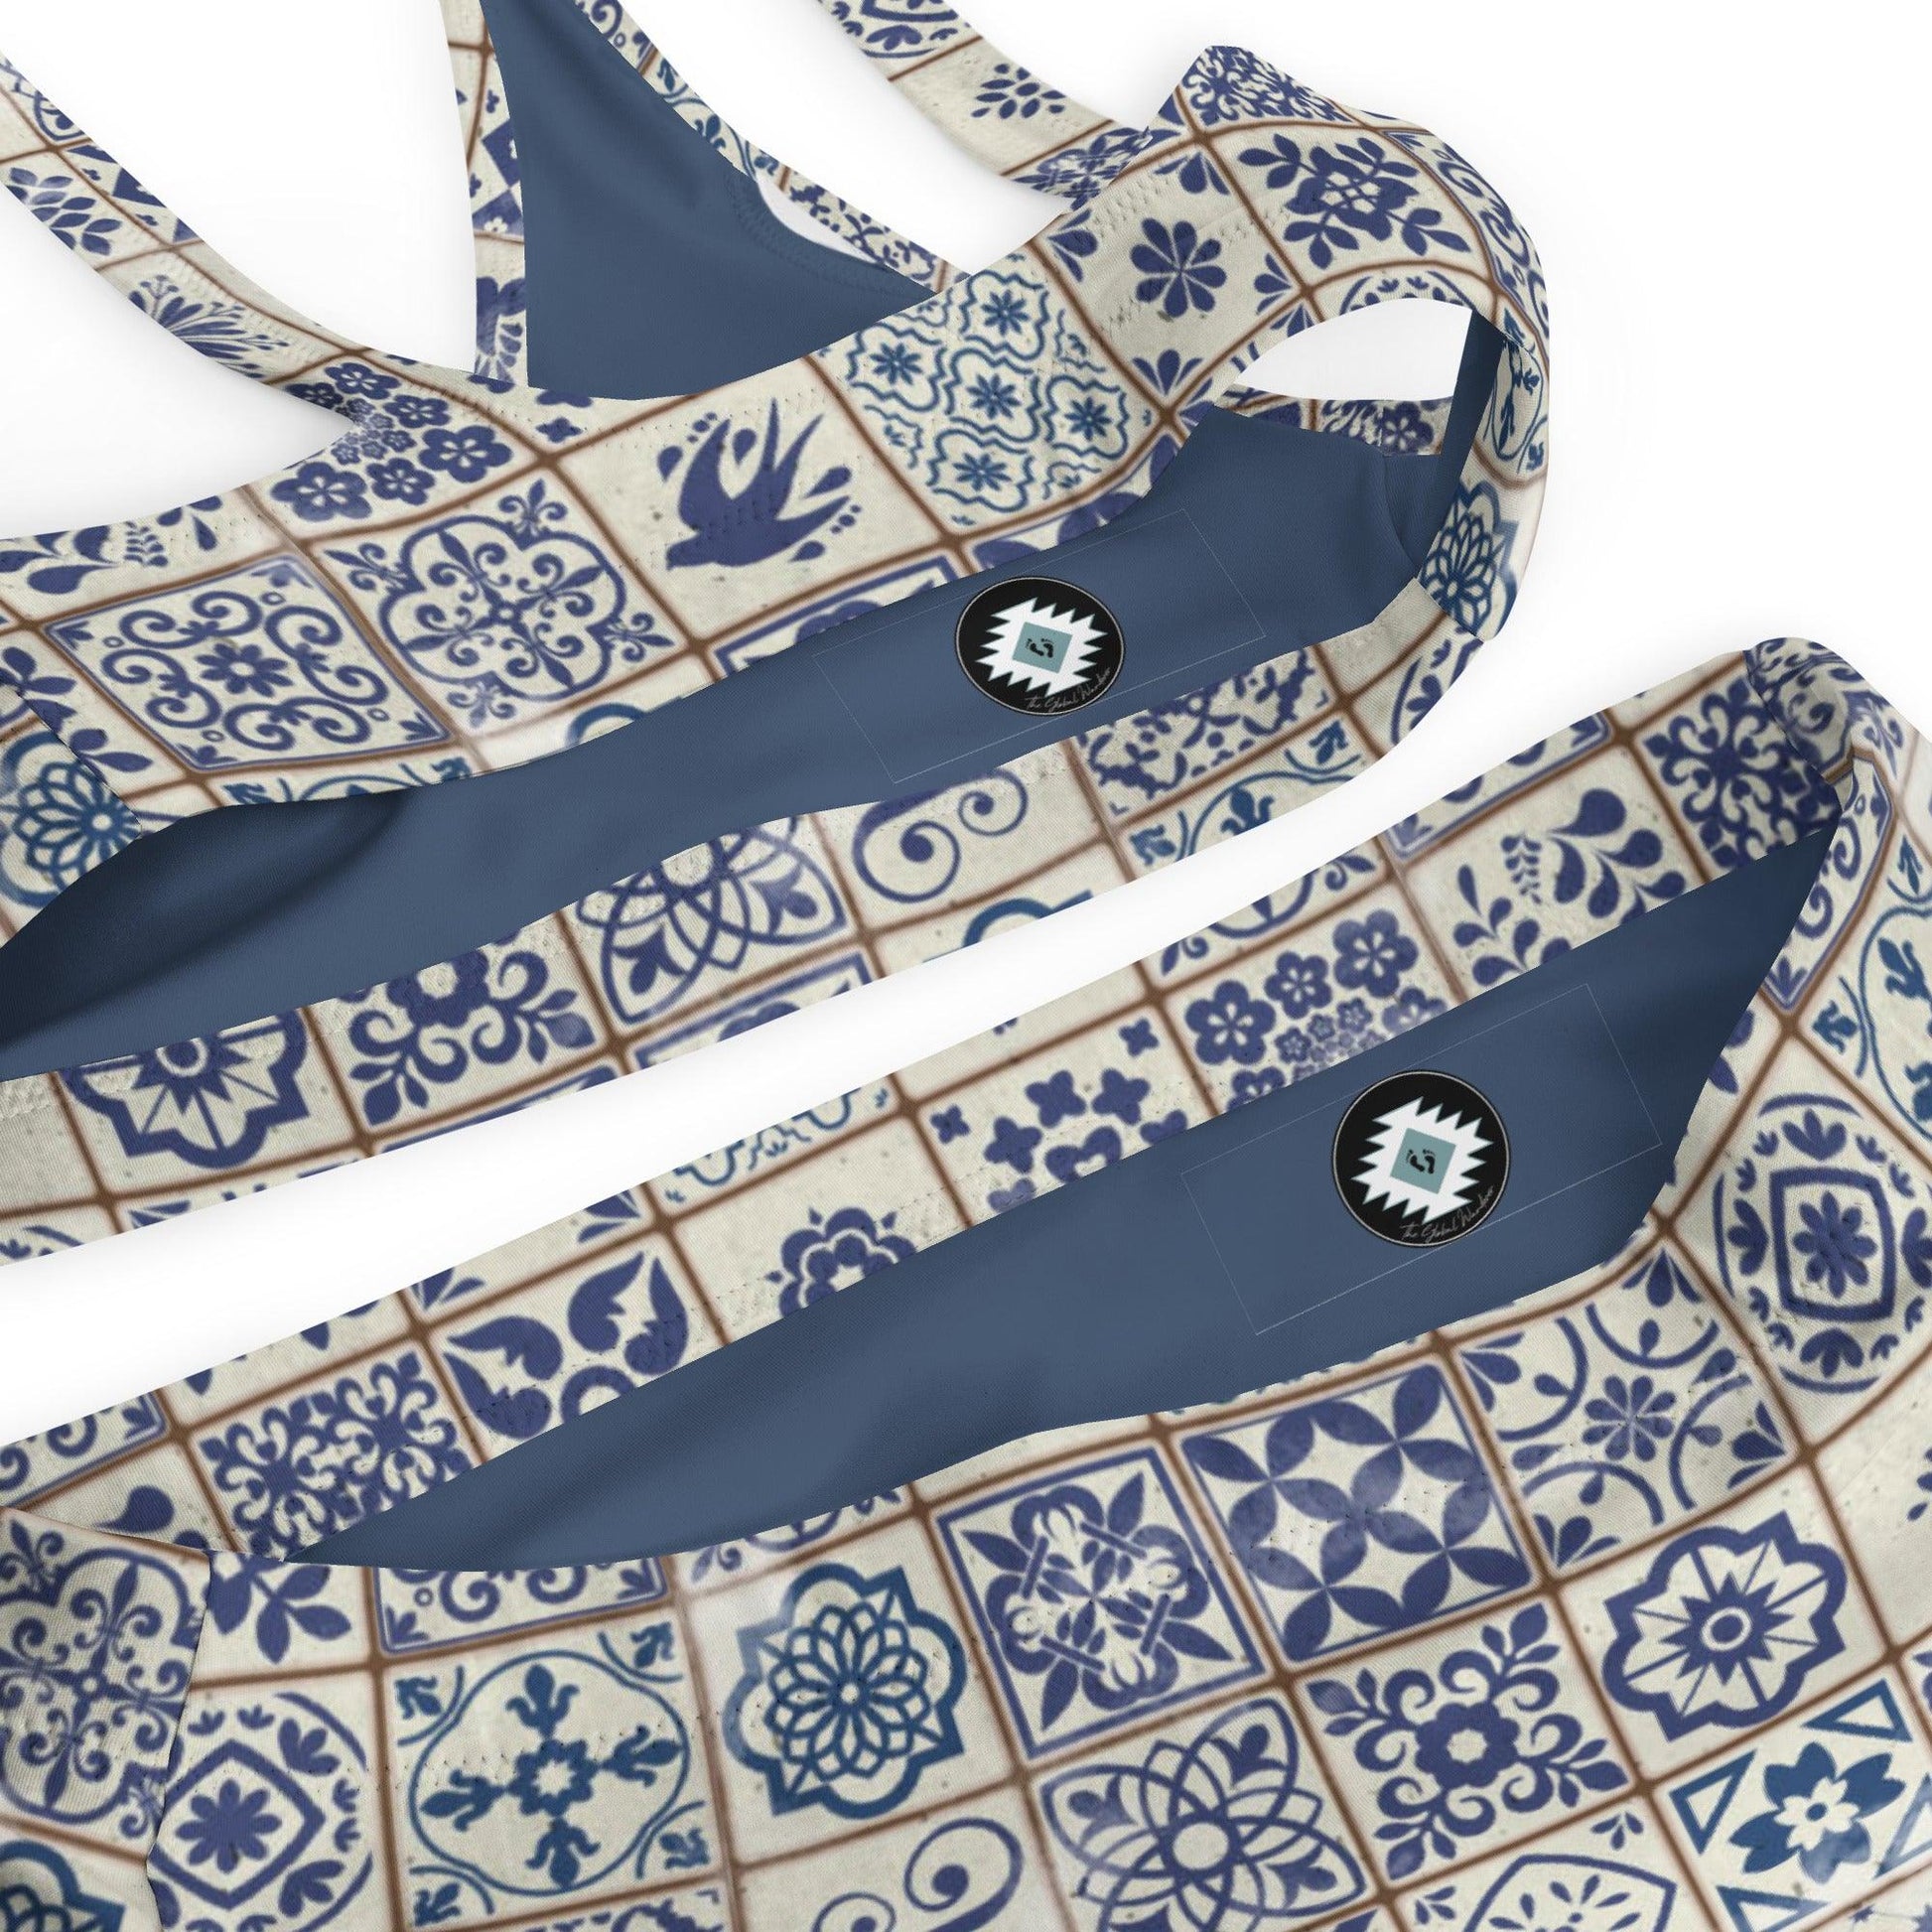 Portuguese Azulejo Tile Recycled High-Waisted Bikini - The Global Wanderer